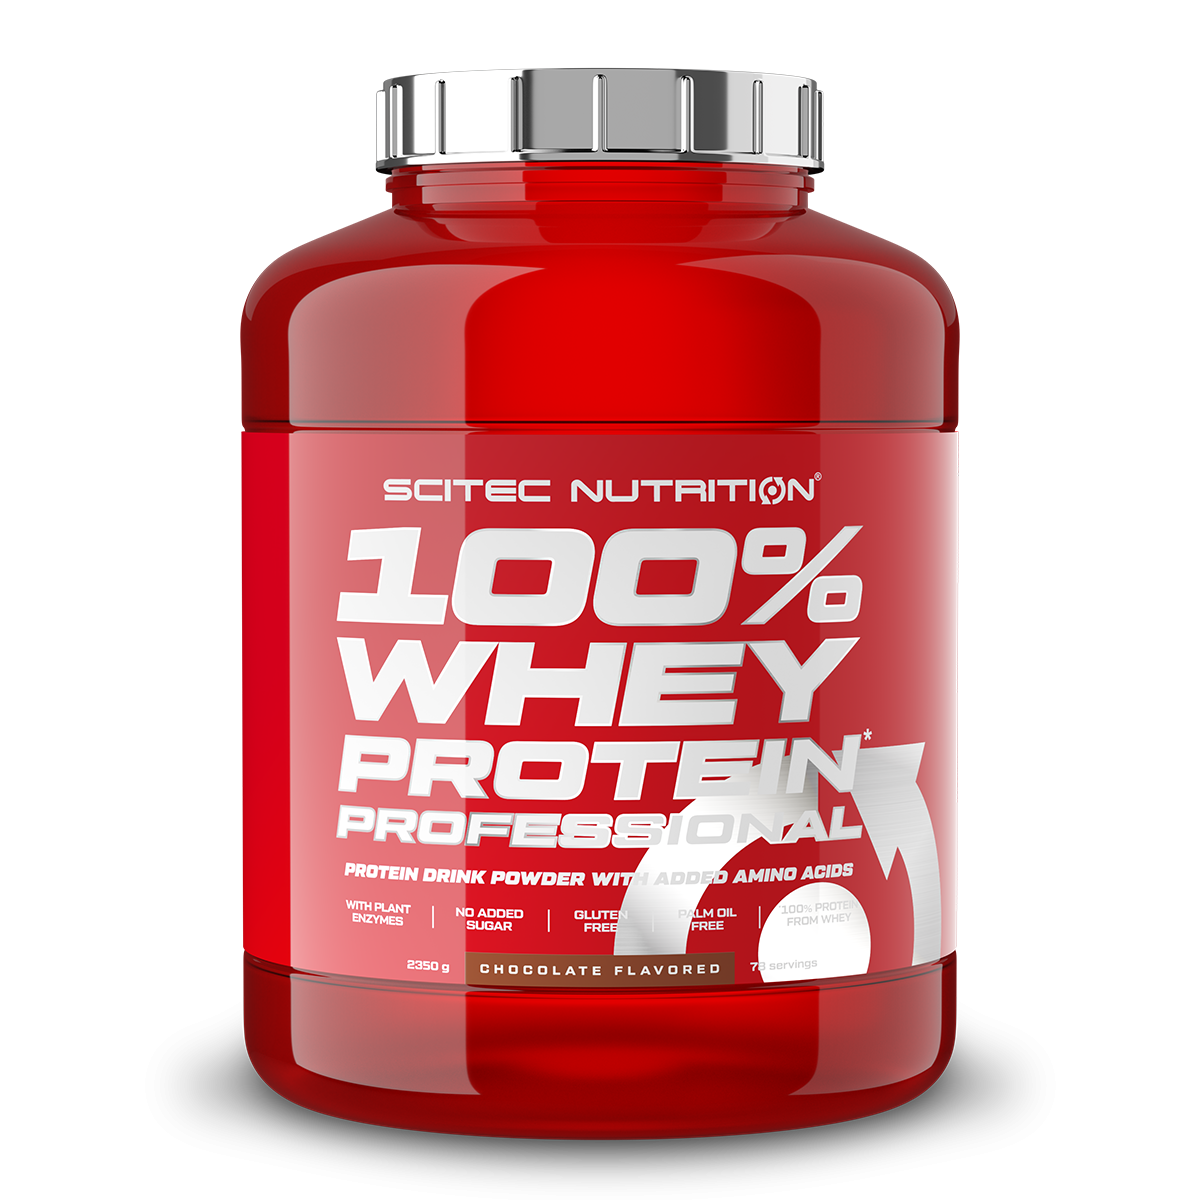 Scitec Nutrition 100% Whey Protein Professional mit extra zusätzlichen Aminosäuren und Verdauungsenzymen, Beinhaltet keinen Zuckerzusatz, 2.35 kg, Vanille-Mischobst